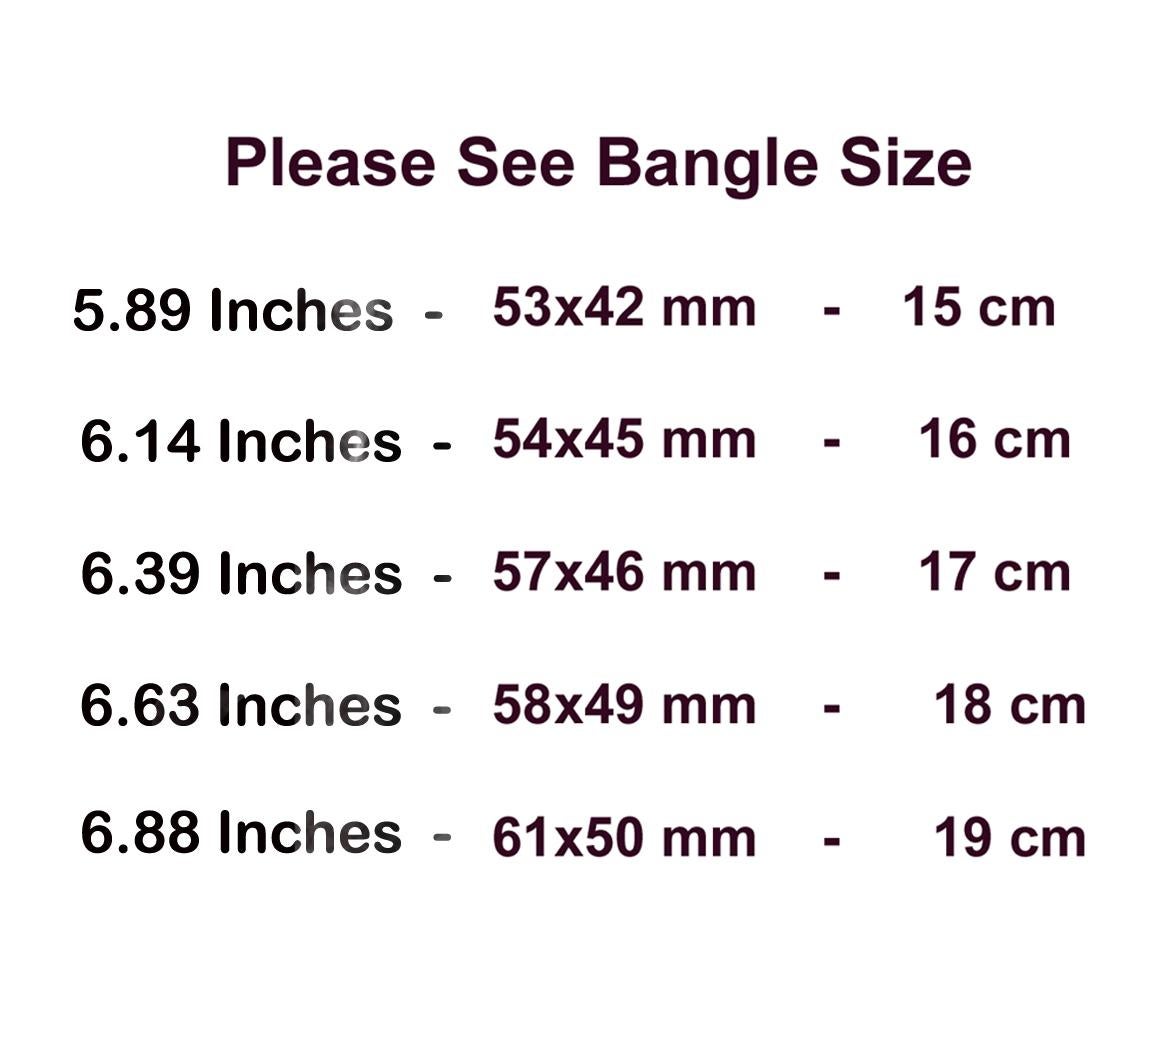 18 cm bangle size